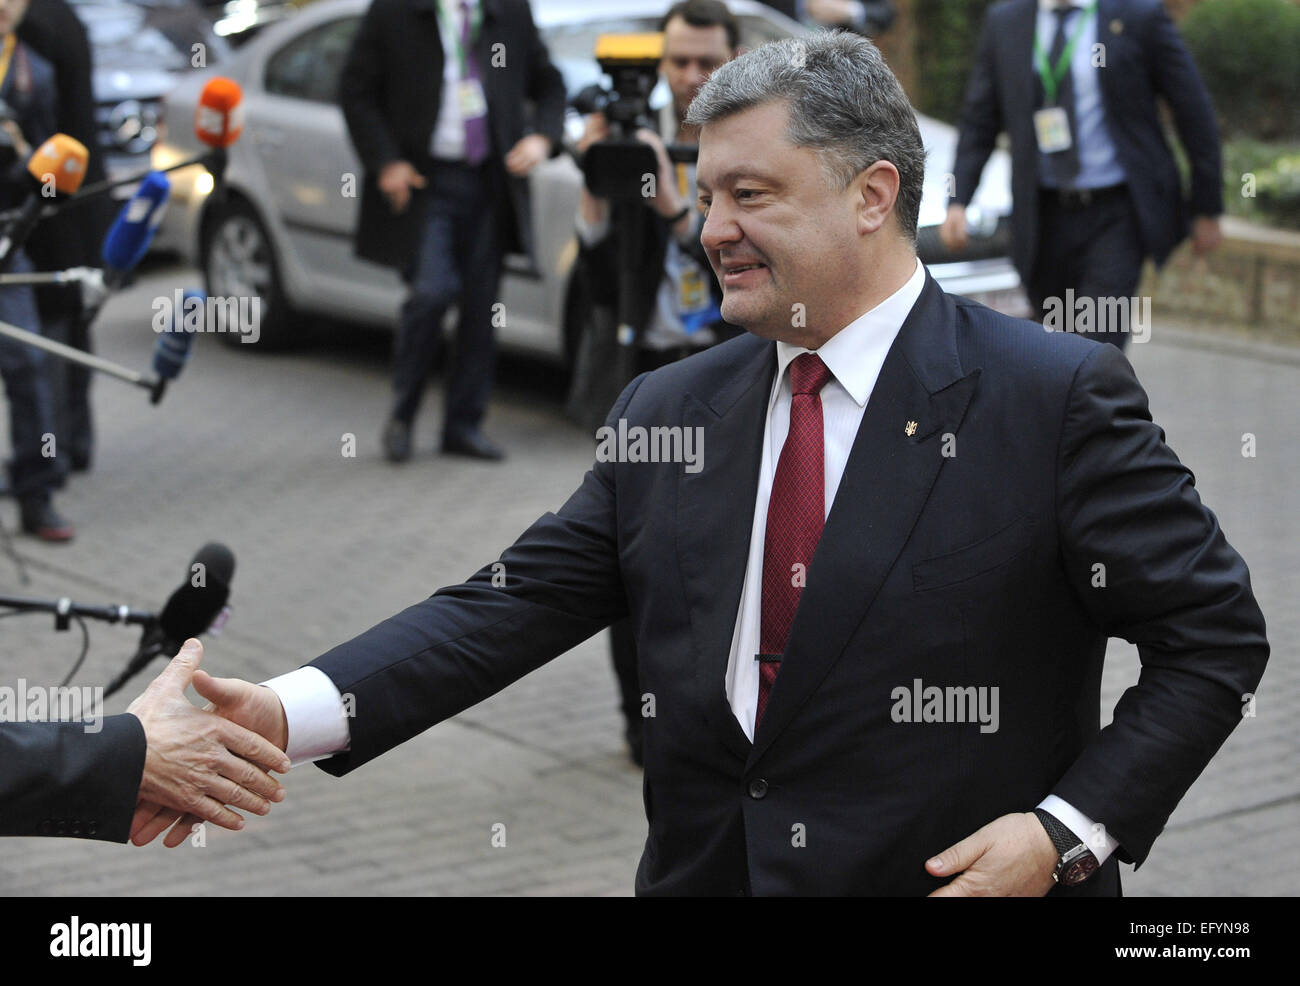 (150212) -- Bruxelles, le 12 février 2015 (Xinhua) -- Le Président de l'Ukraine Petro Poroshenko arrive au siège de l'UE pour un sommet de l'UE à Bruxelles, Belgique, le 12 février 2015. (Xinhua/Ye Pingfan) Banque D'Images